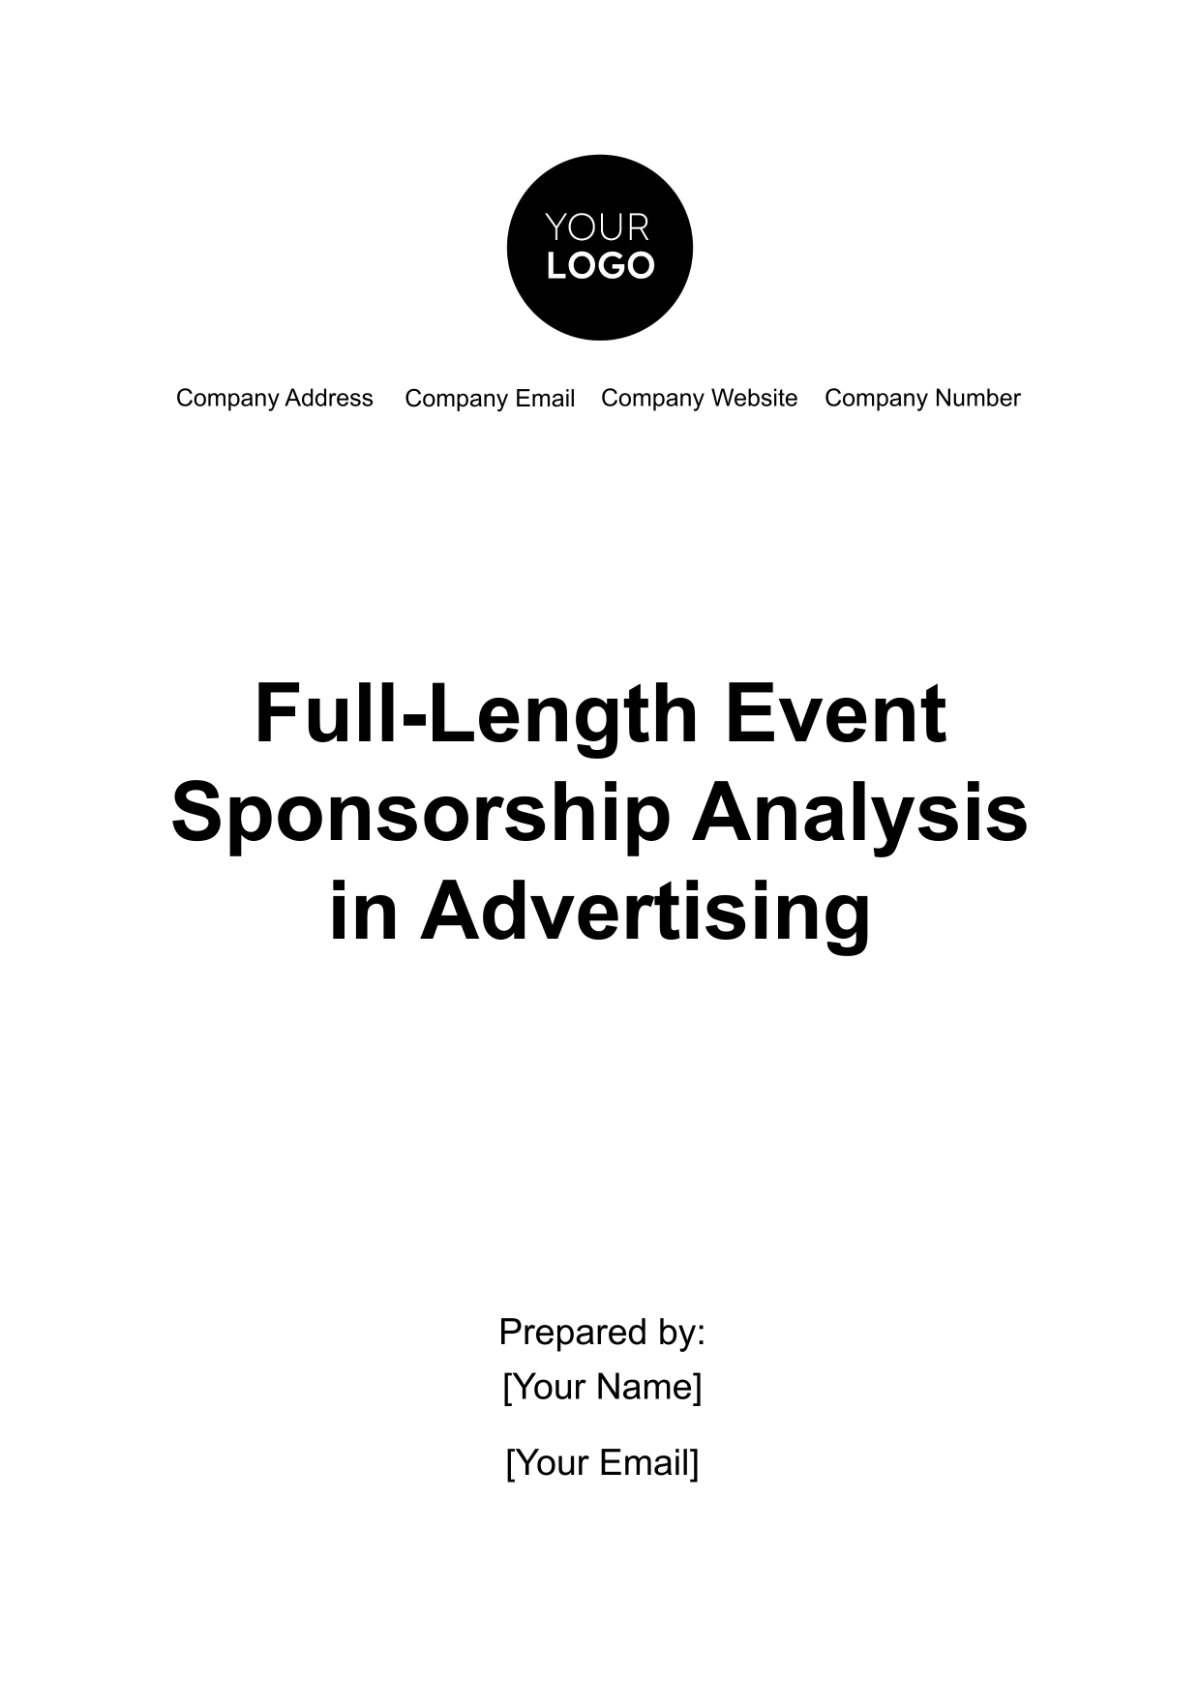 Full-Length Event Sponsorship Analysis in Advertising Template